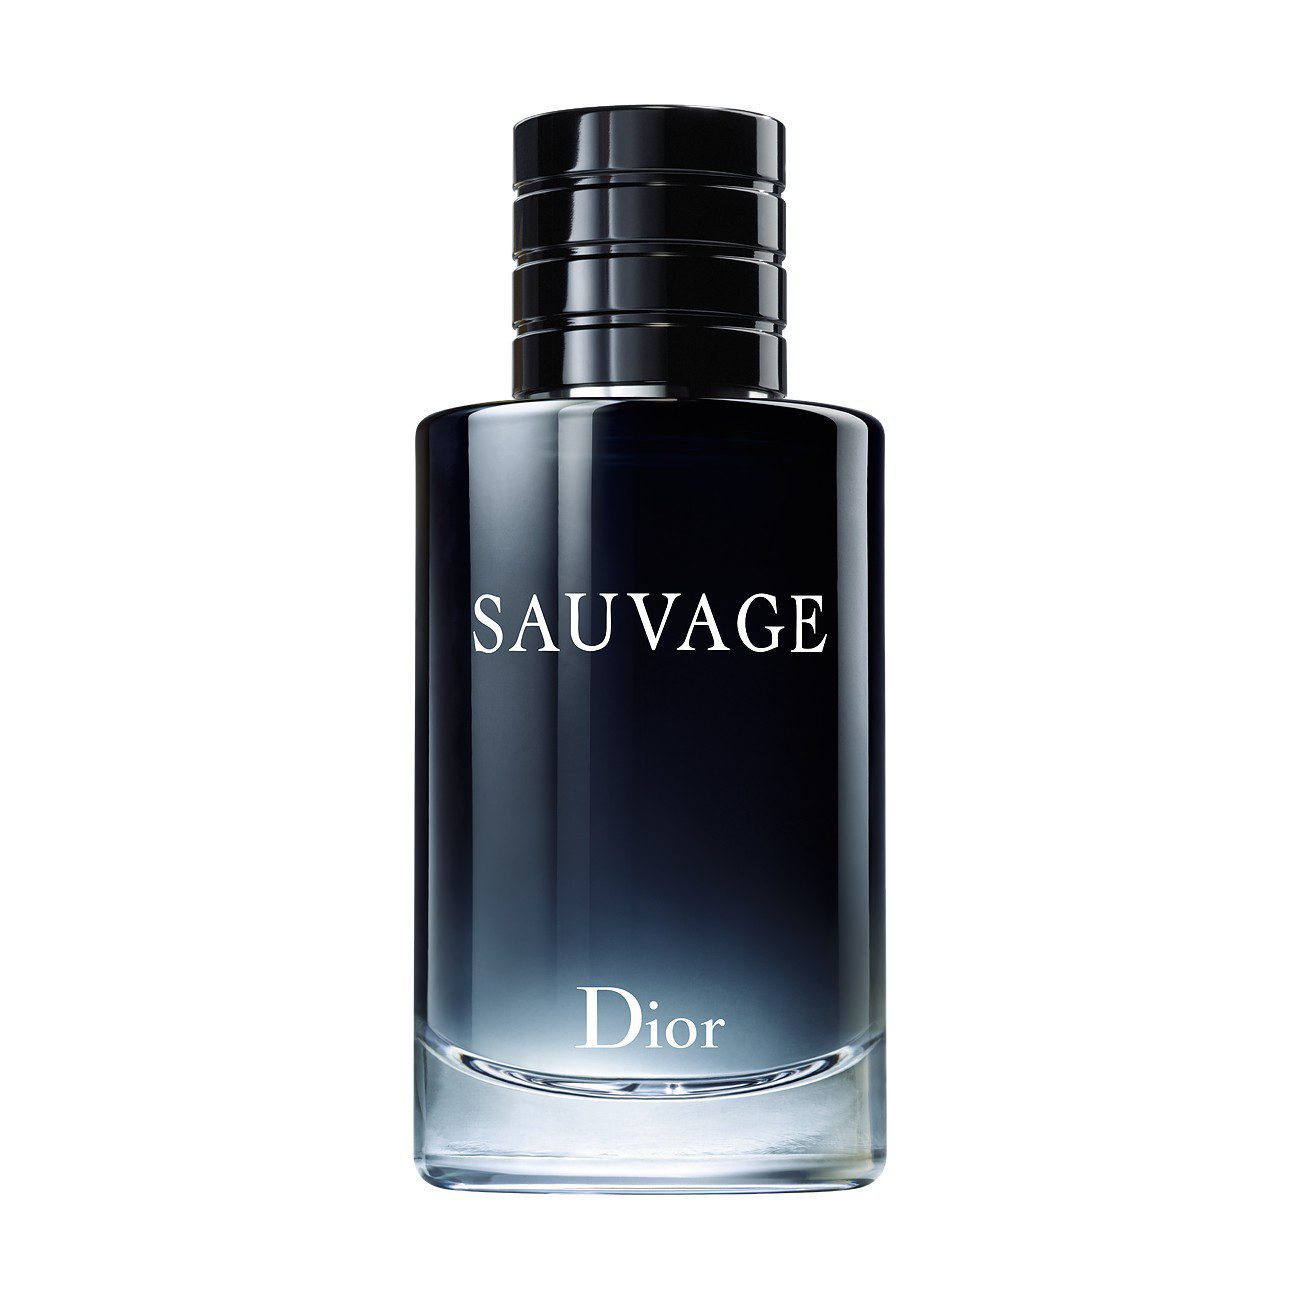 Sauvage – Eau de Toilette Christian Dior